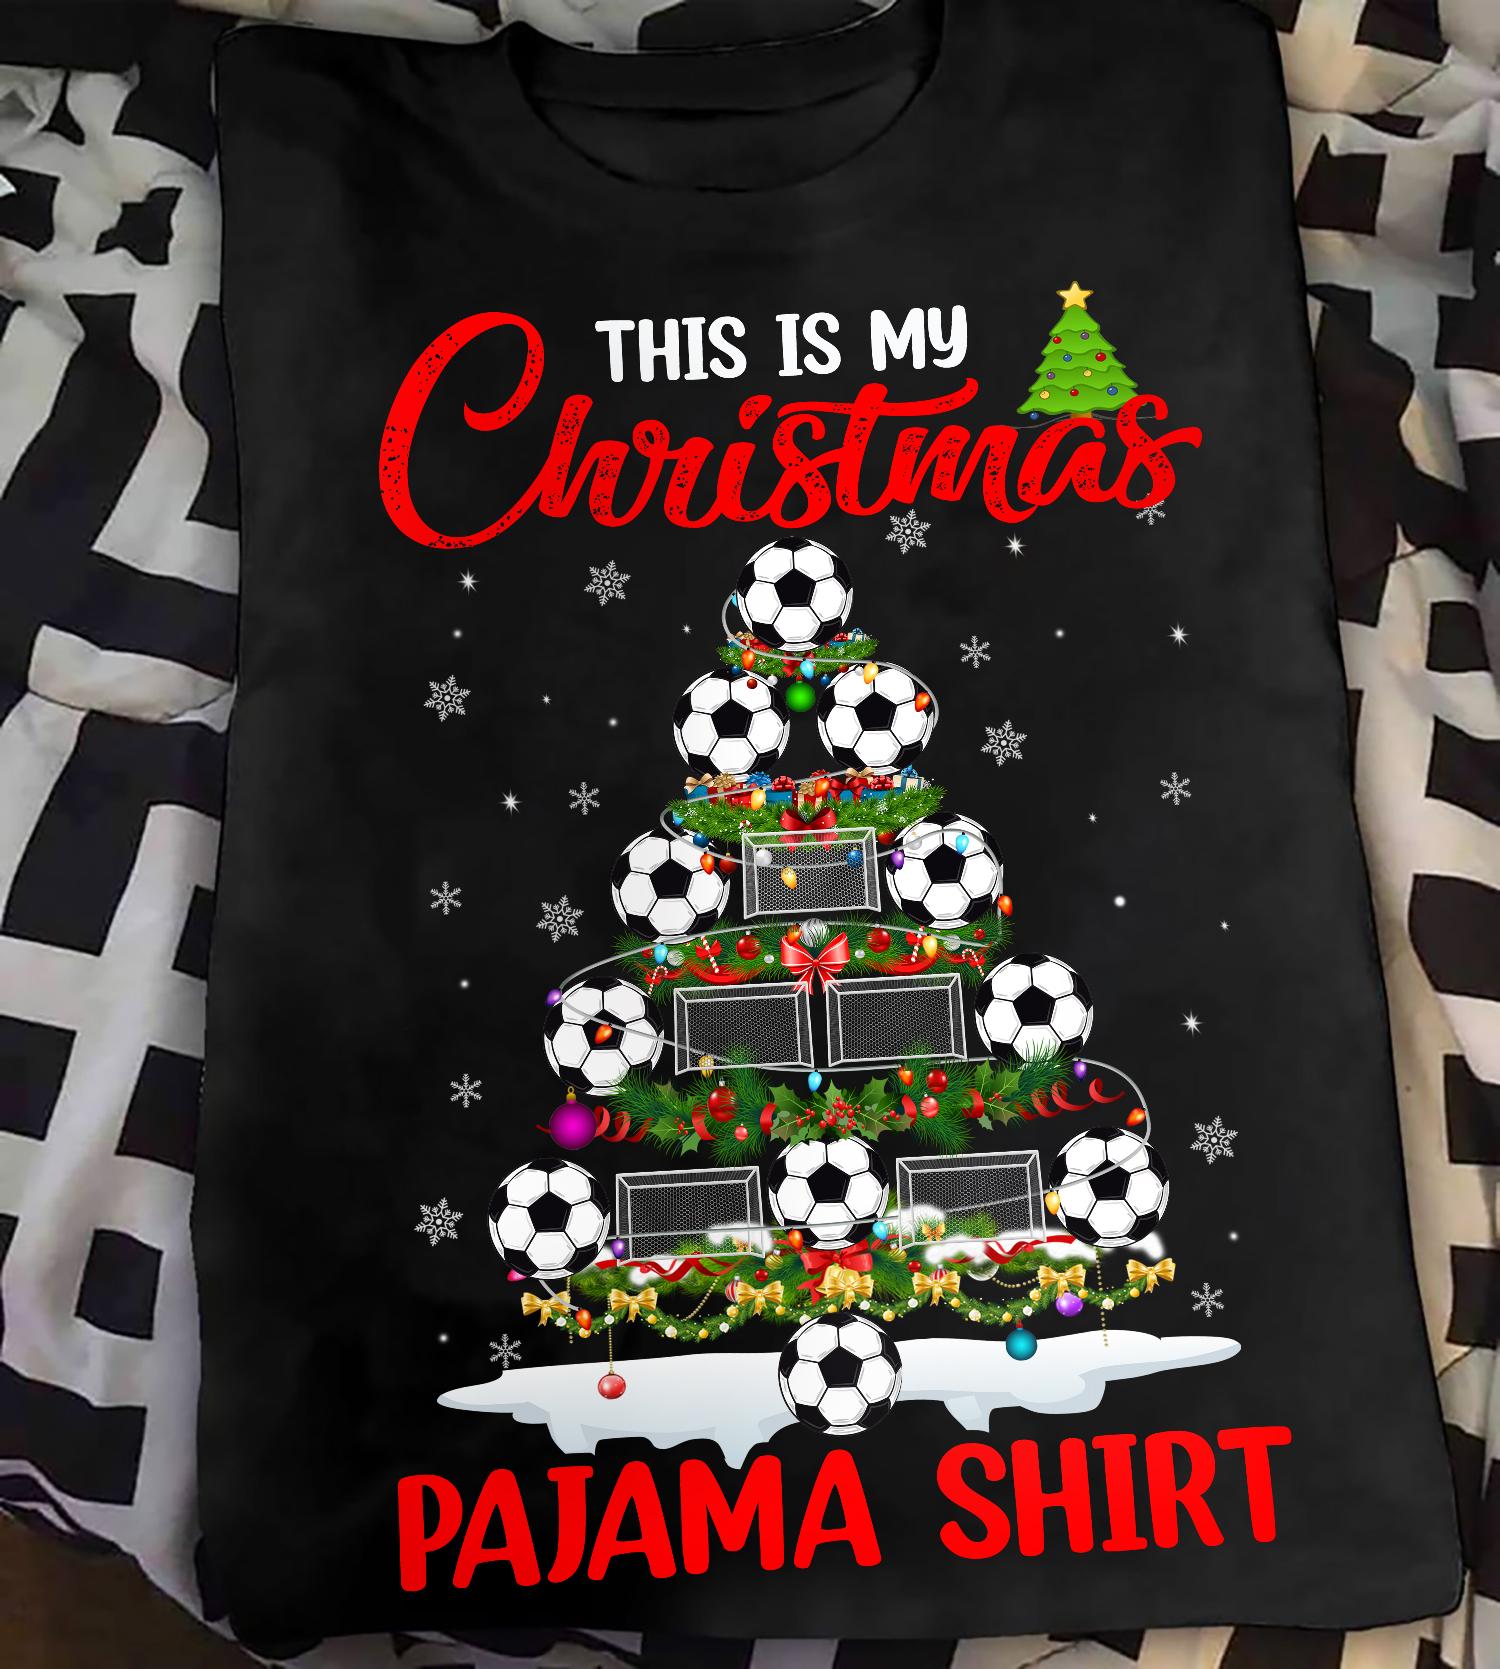 Football Christmas Tree - This is my christmas pajama shirt